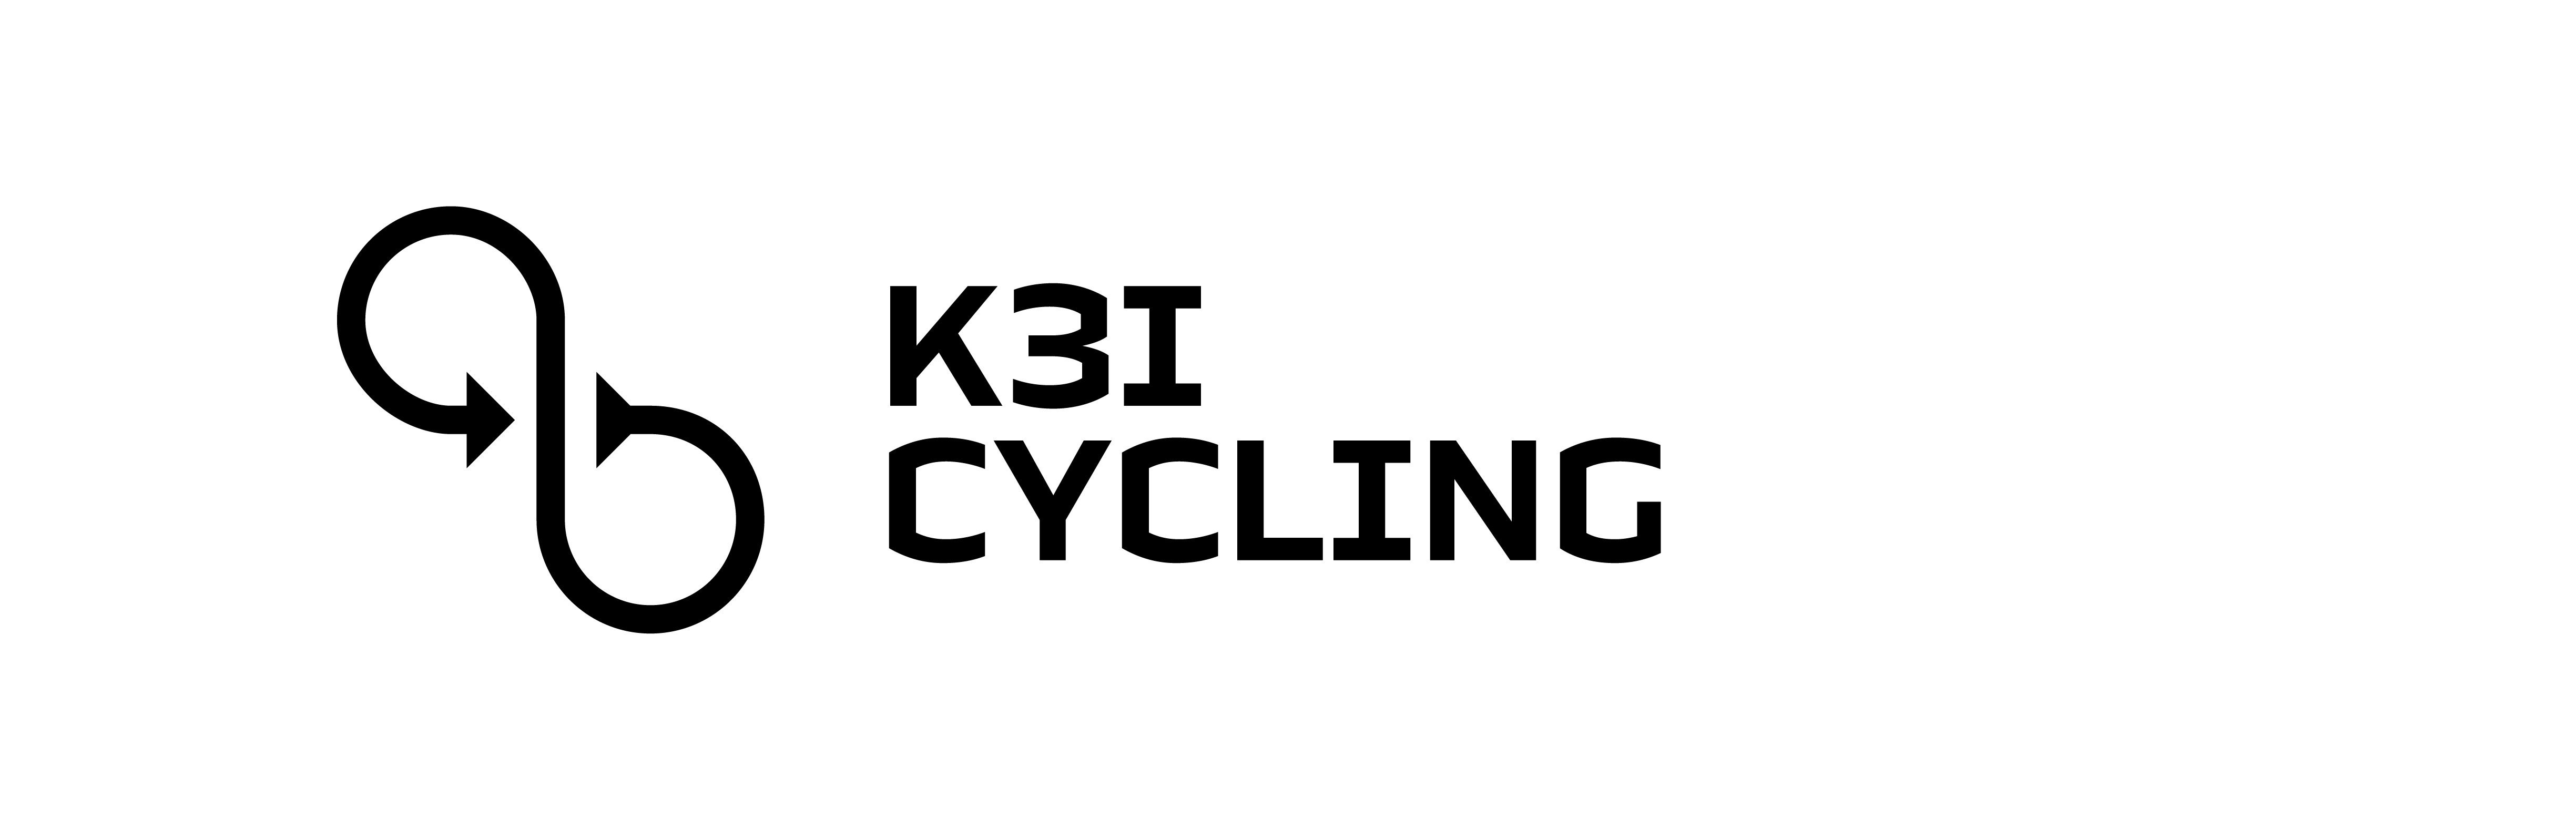 Logo K3I Cycling